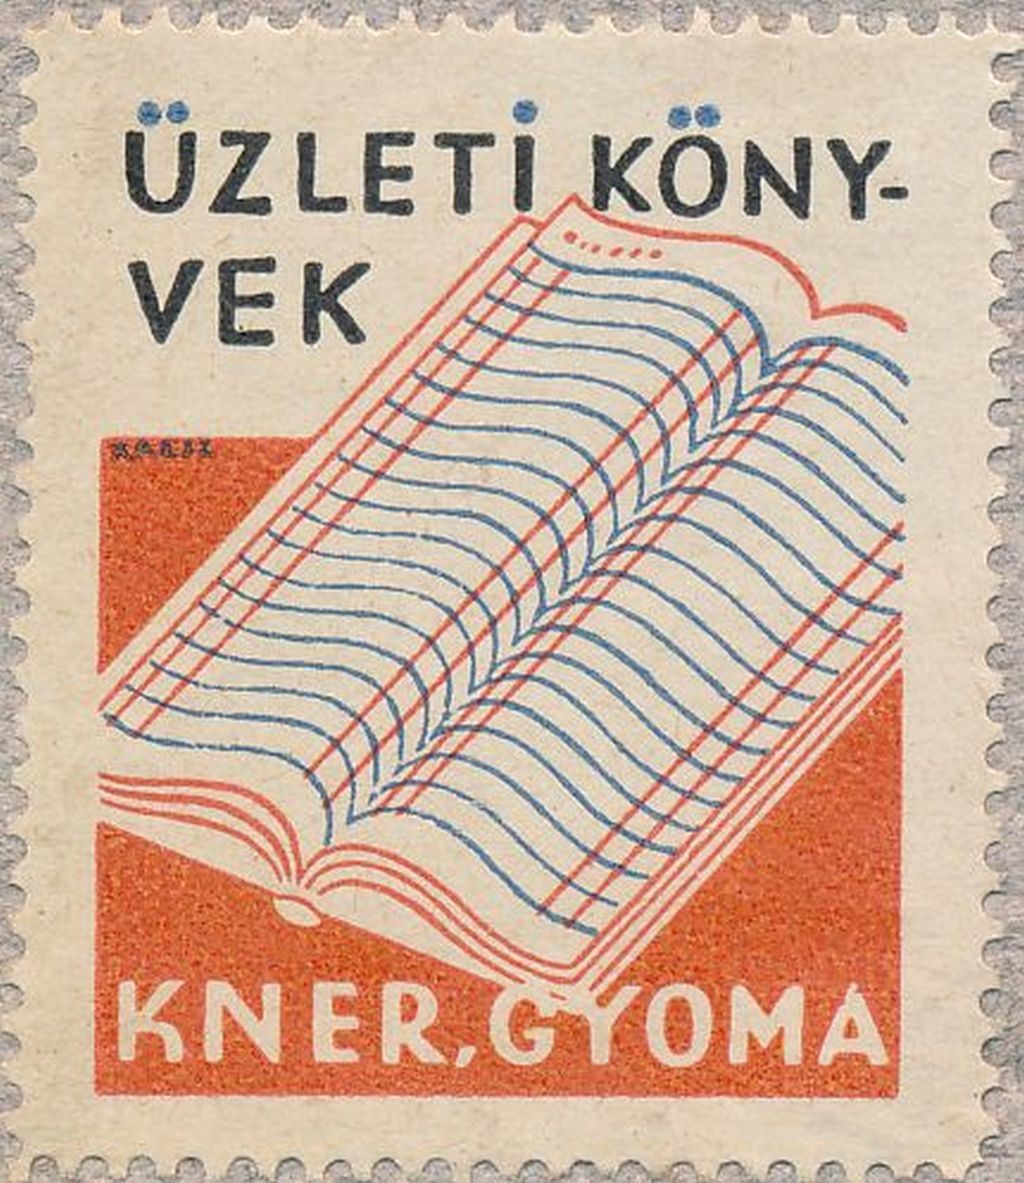 Kner Nyomda Gyoma Üzleti Könyvek reklámbélyeg (Magyar Kereskedelmi és Vendéglátóipari Múzeum CC BY-NC-SA)